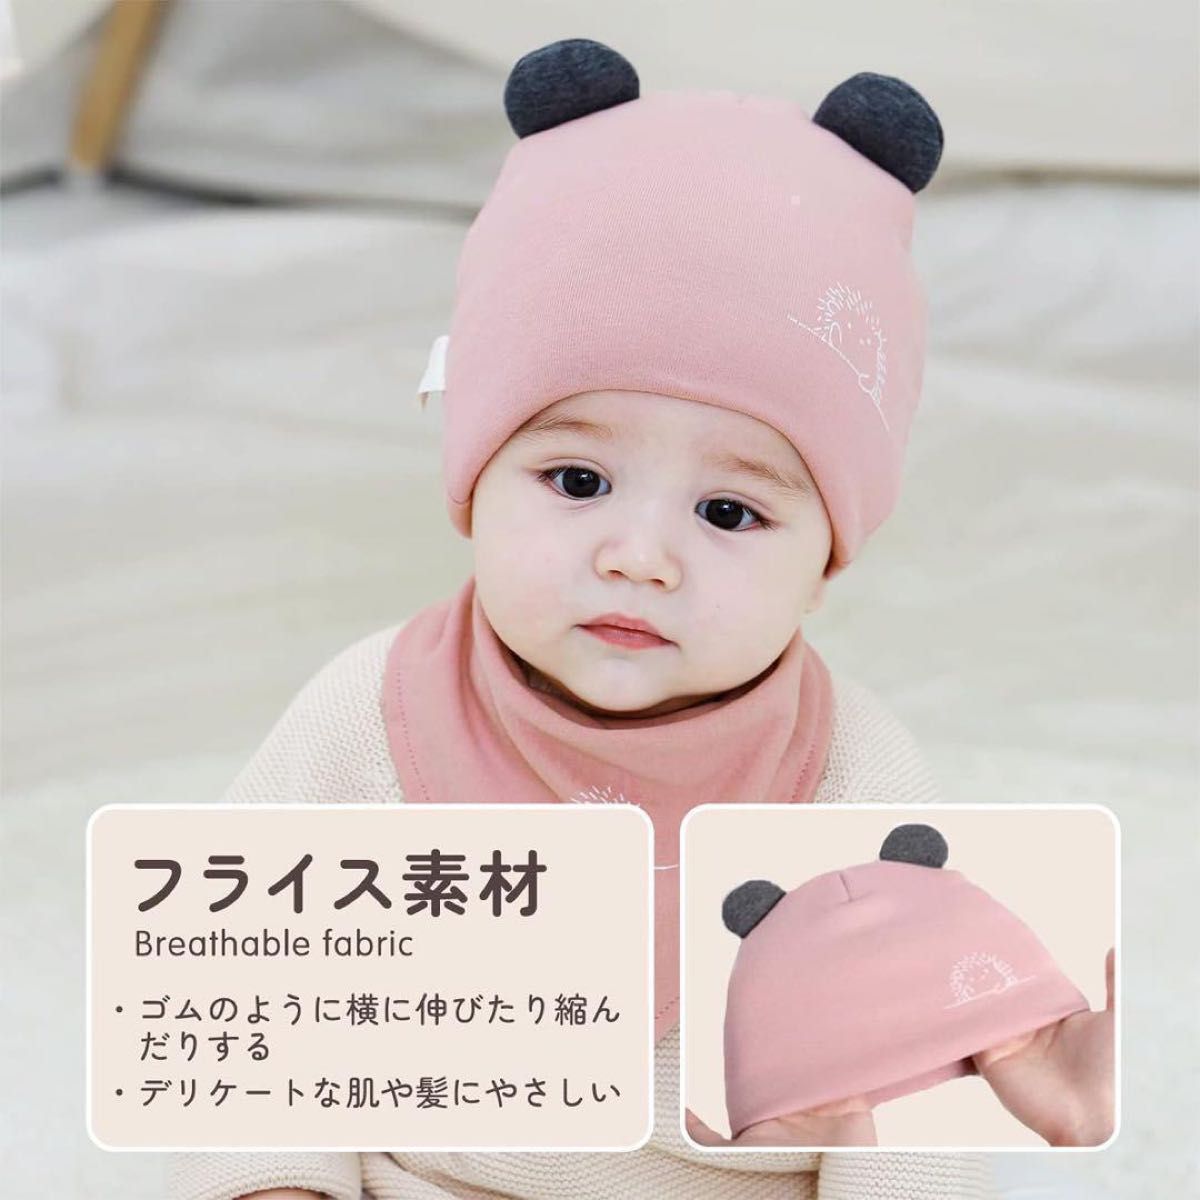 ★大人気★ベビー帽子 コットン帽子 赤ちゃん帽子 赤ちゃんファッション 小物